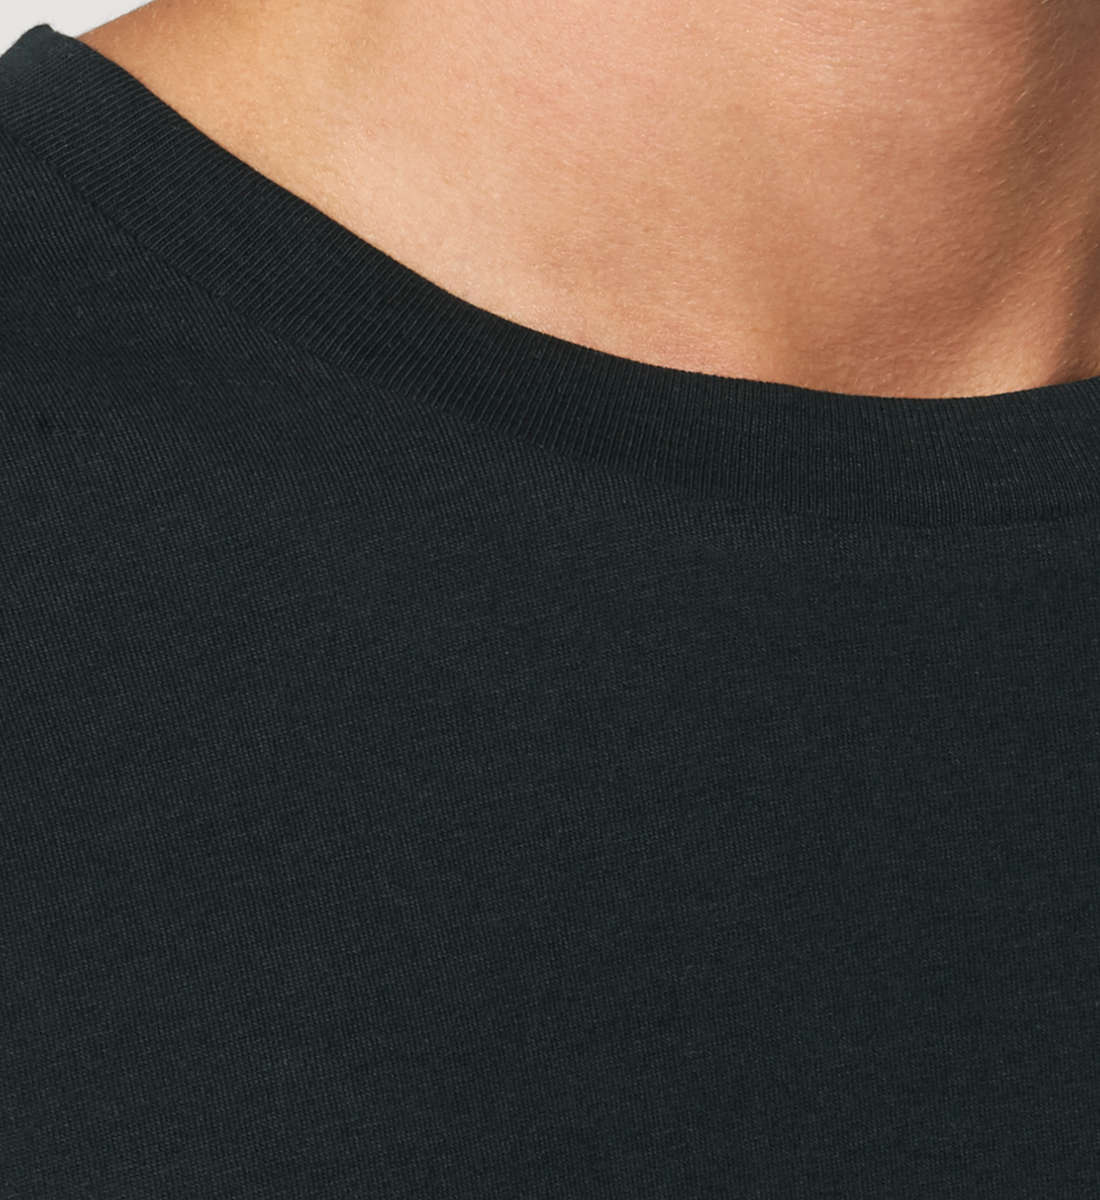 Schwarzes T-Shirt Unisex Relaxed Fit für Frauen und Männer bedruckt mit dem Design der Roger Rockawoo Kollektion Mountainbike Shredding Culture Community